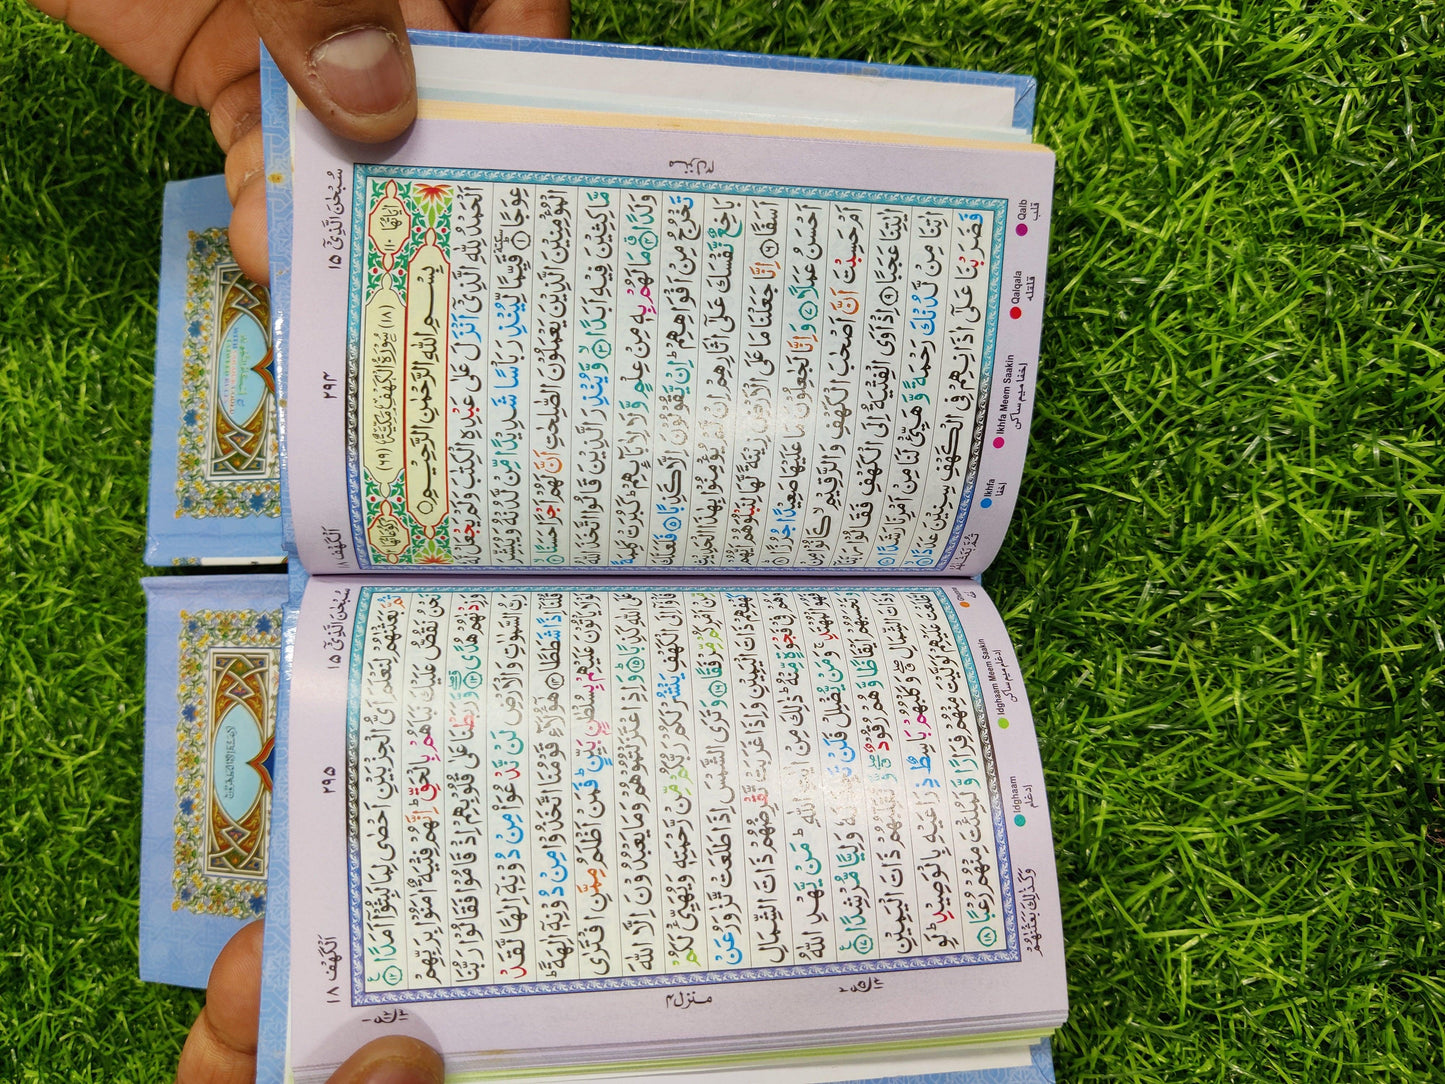 3 part 347 No hafezi Quran - HT Bazar